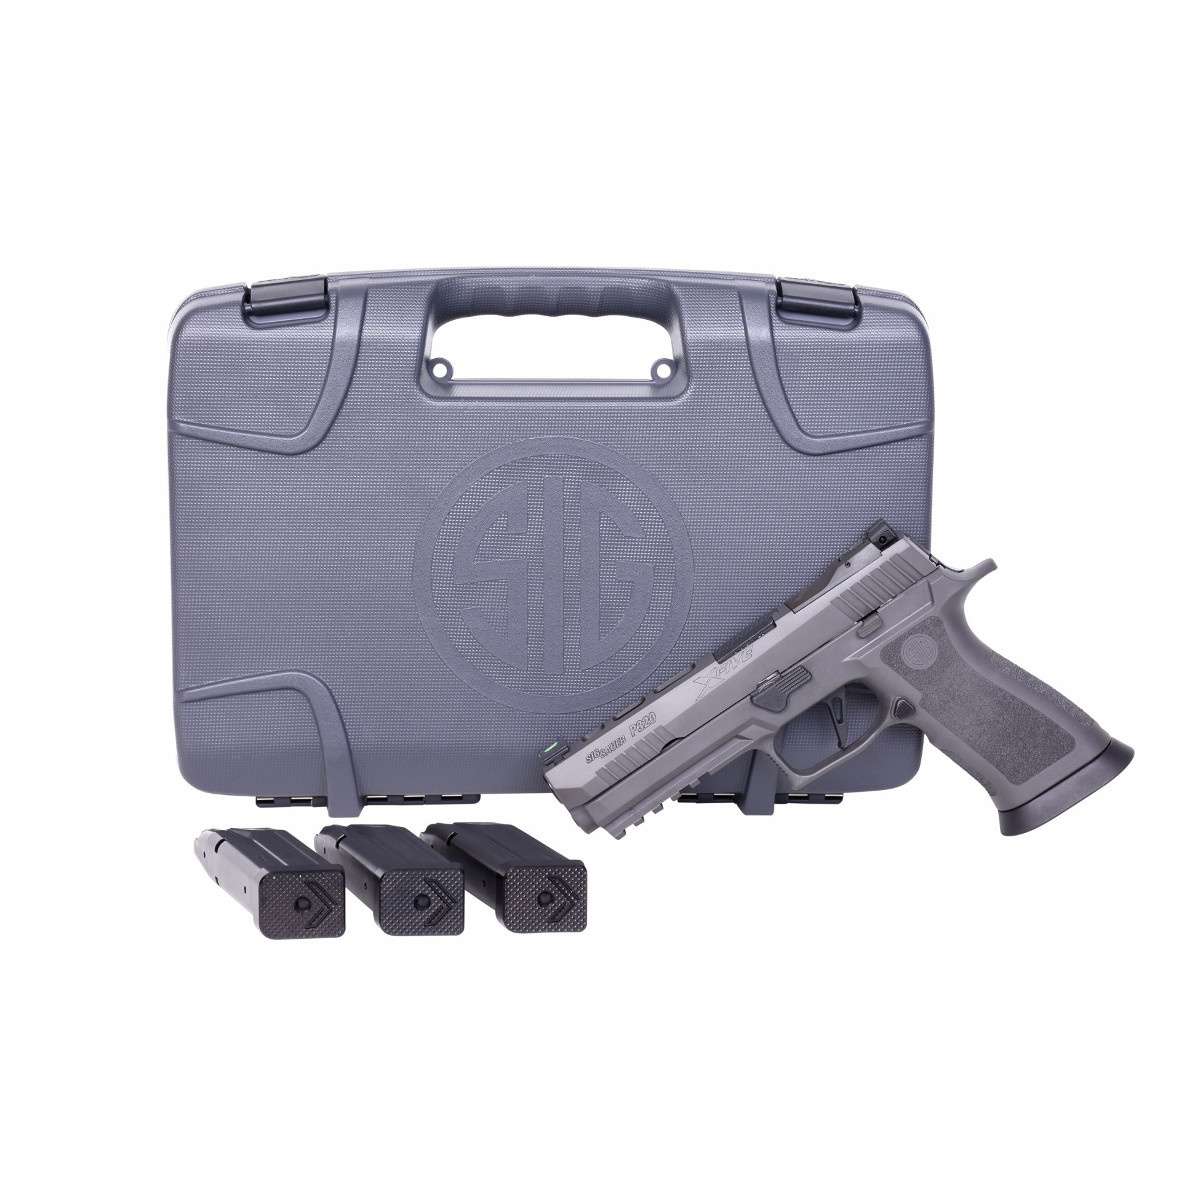 Neuwaffe, auf Lager: SIG Sauer P320 x5 Legion Pistole X-Five 9mm Finanzierung möglich